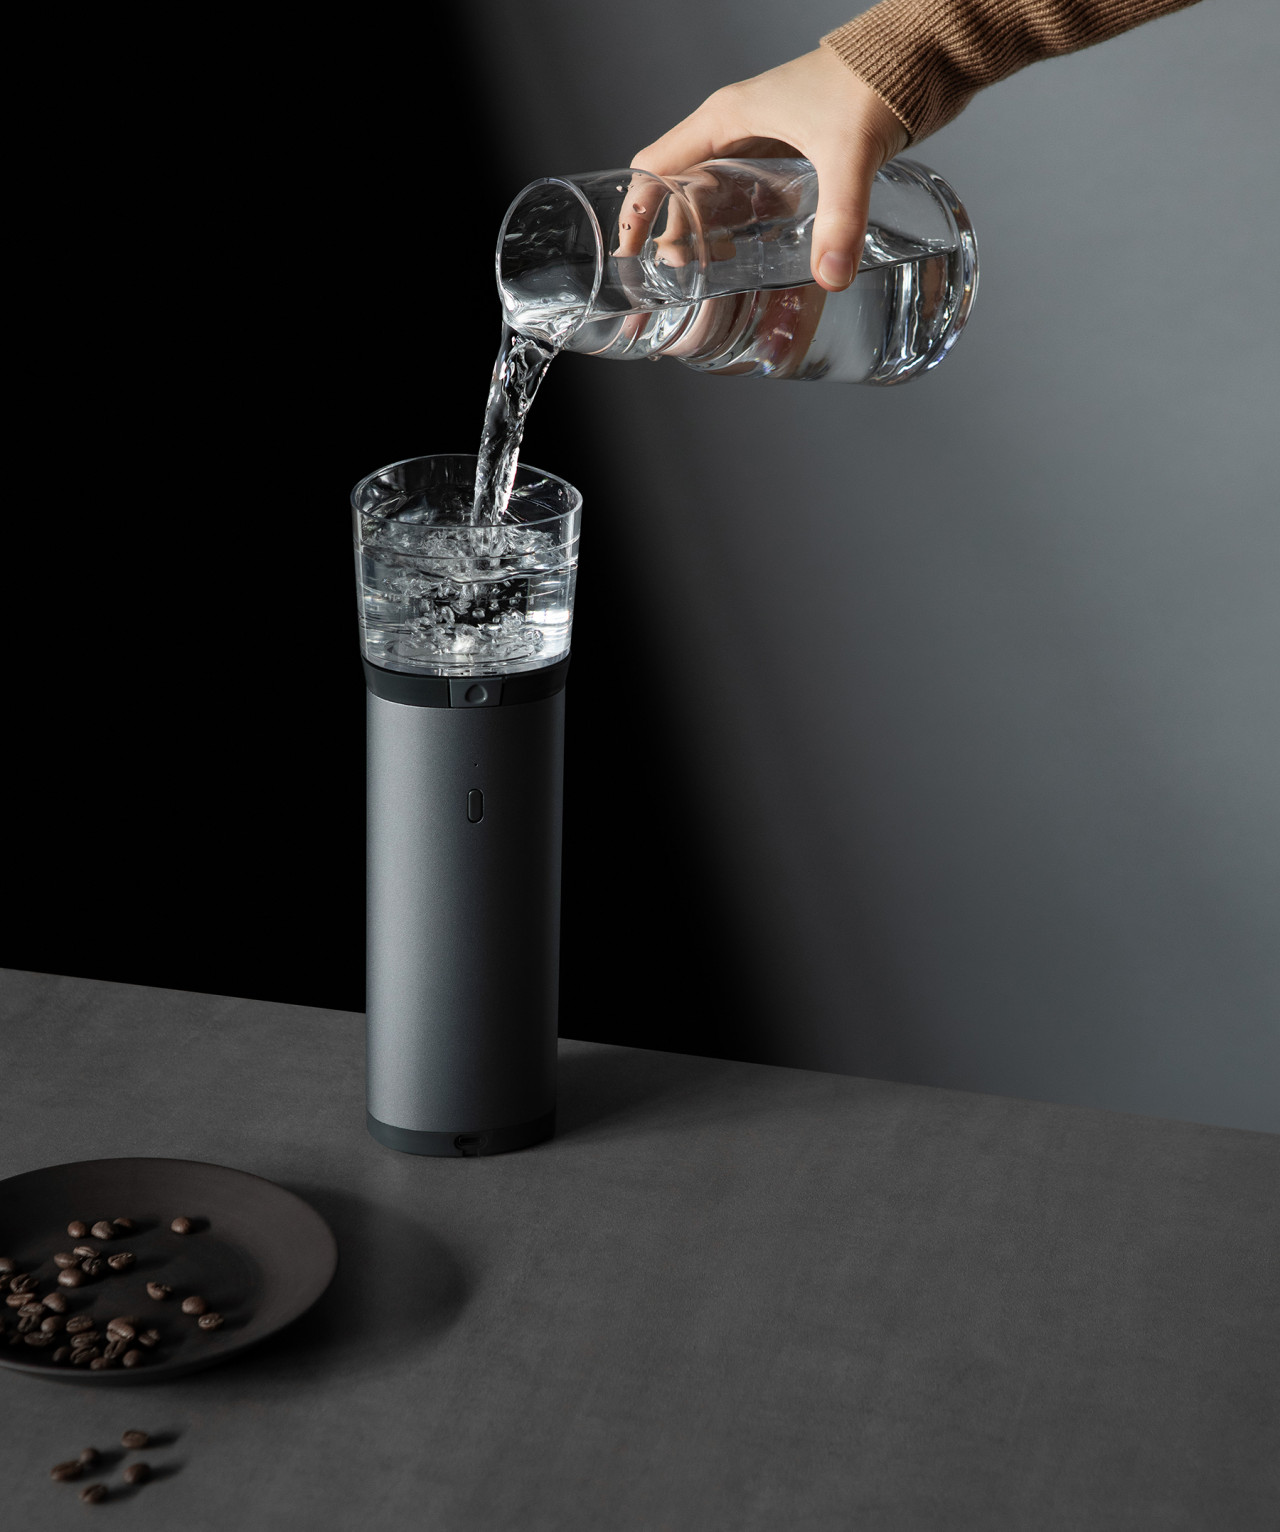 https://design-milk.com/images/2020/11/Osma-coffee-6.jpg